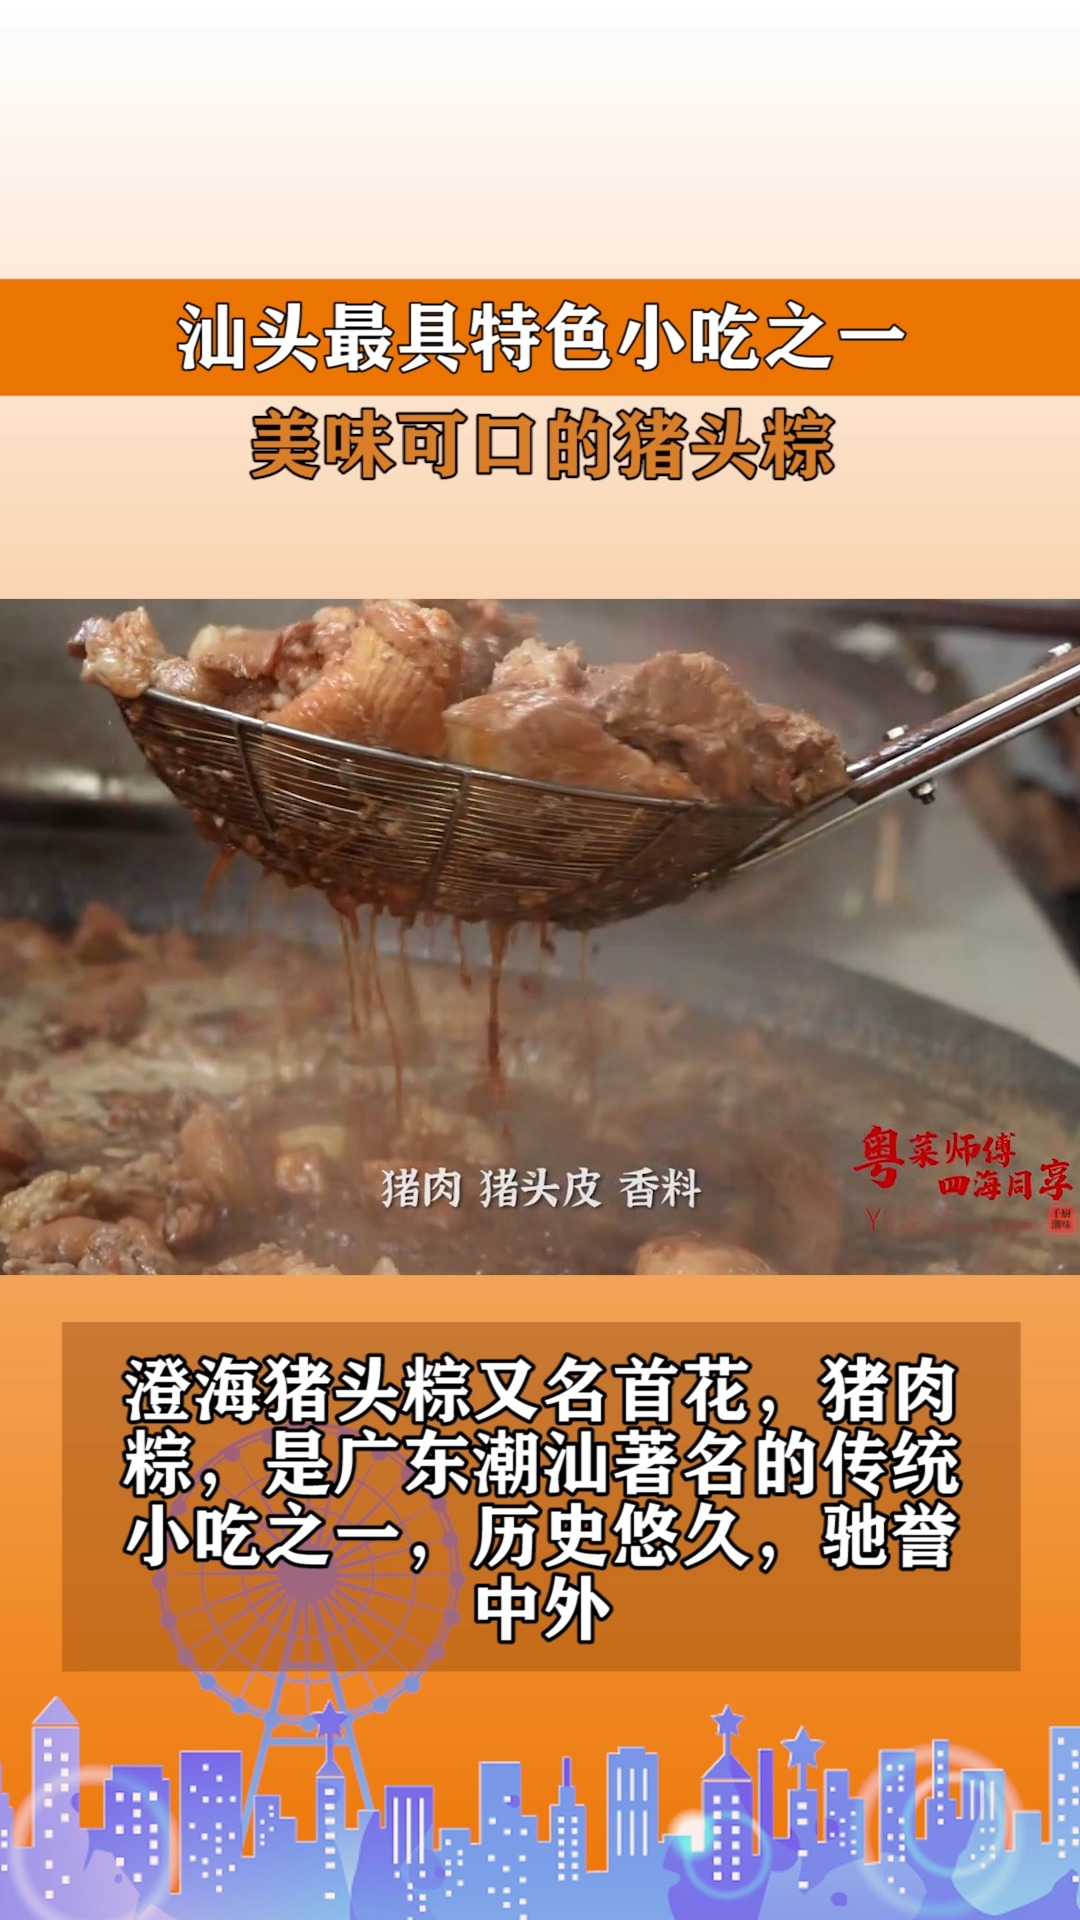 汕头最具特色小吃之一，美味可口的猪头粽。